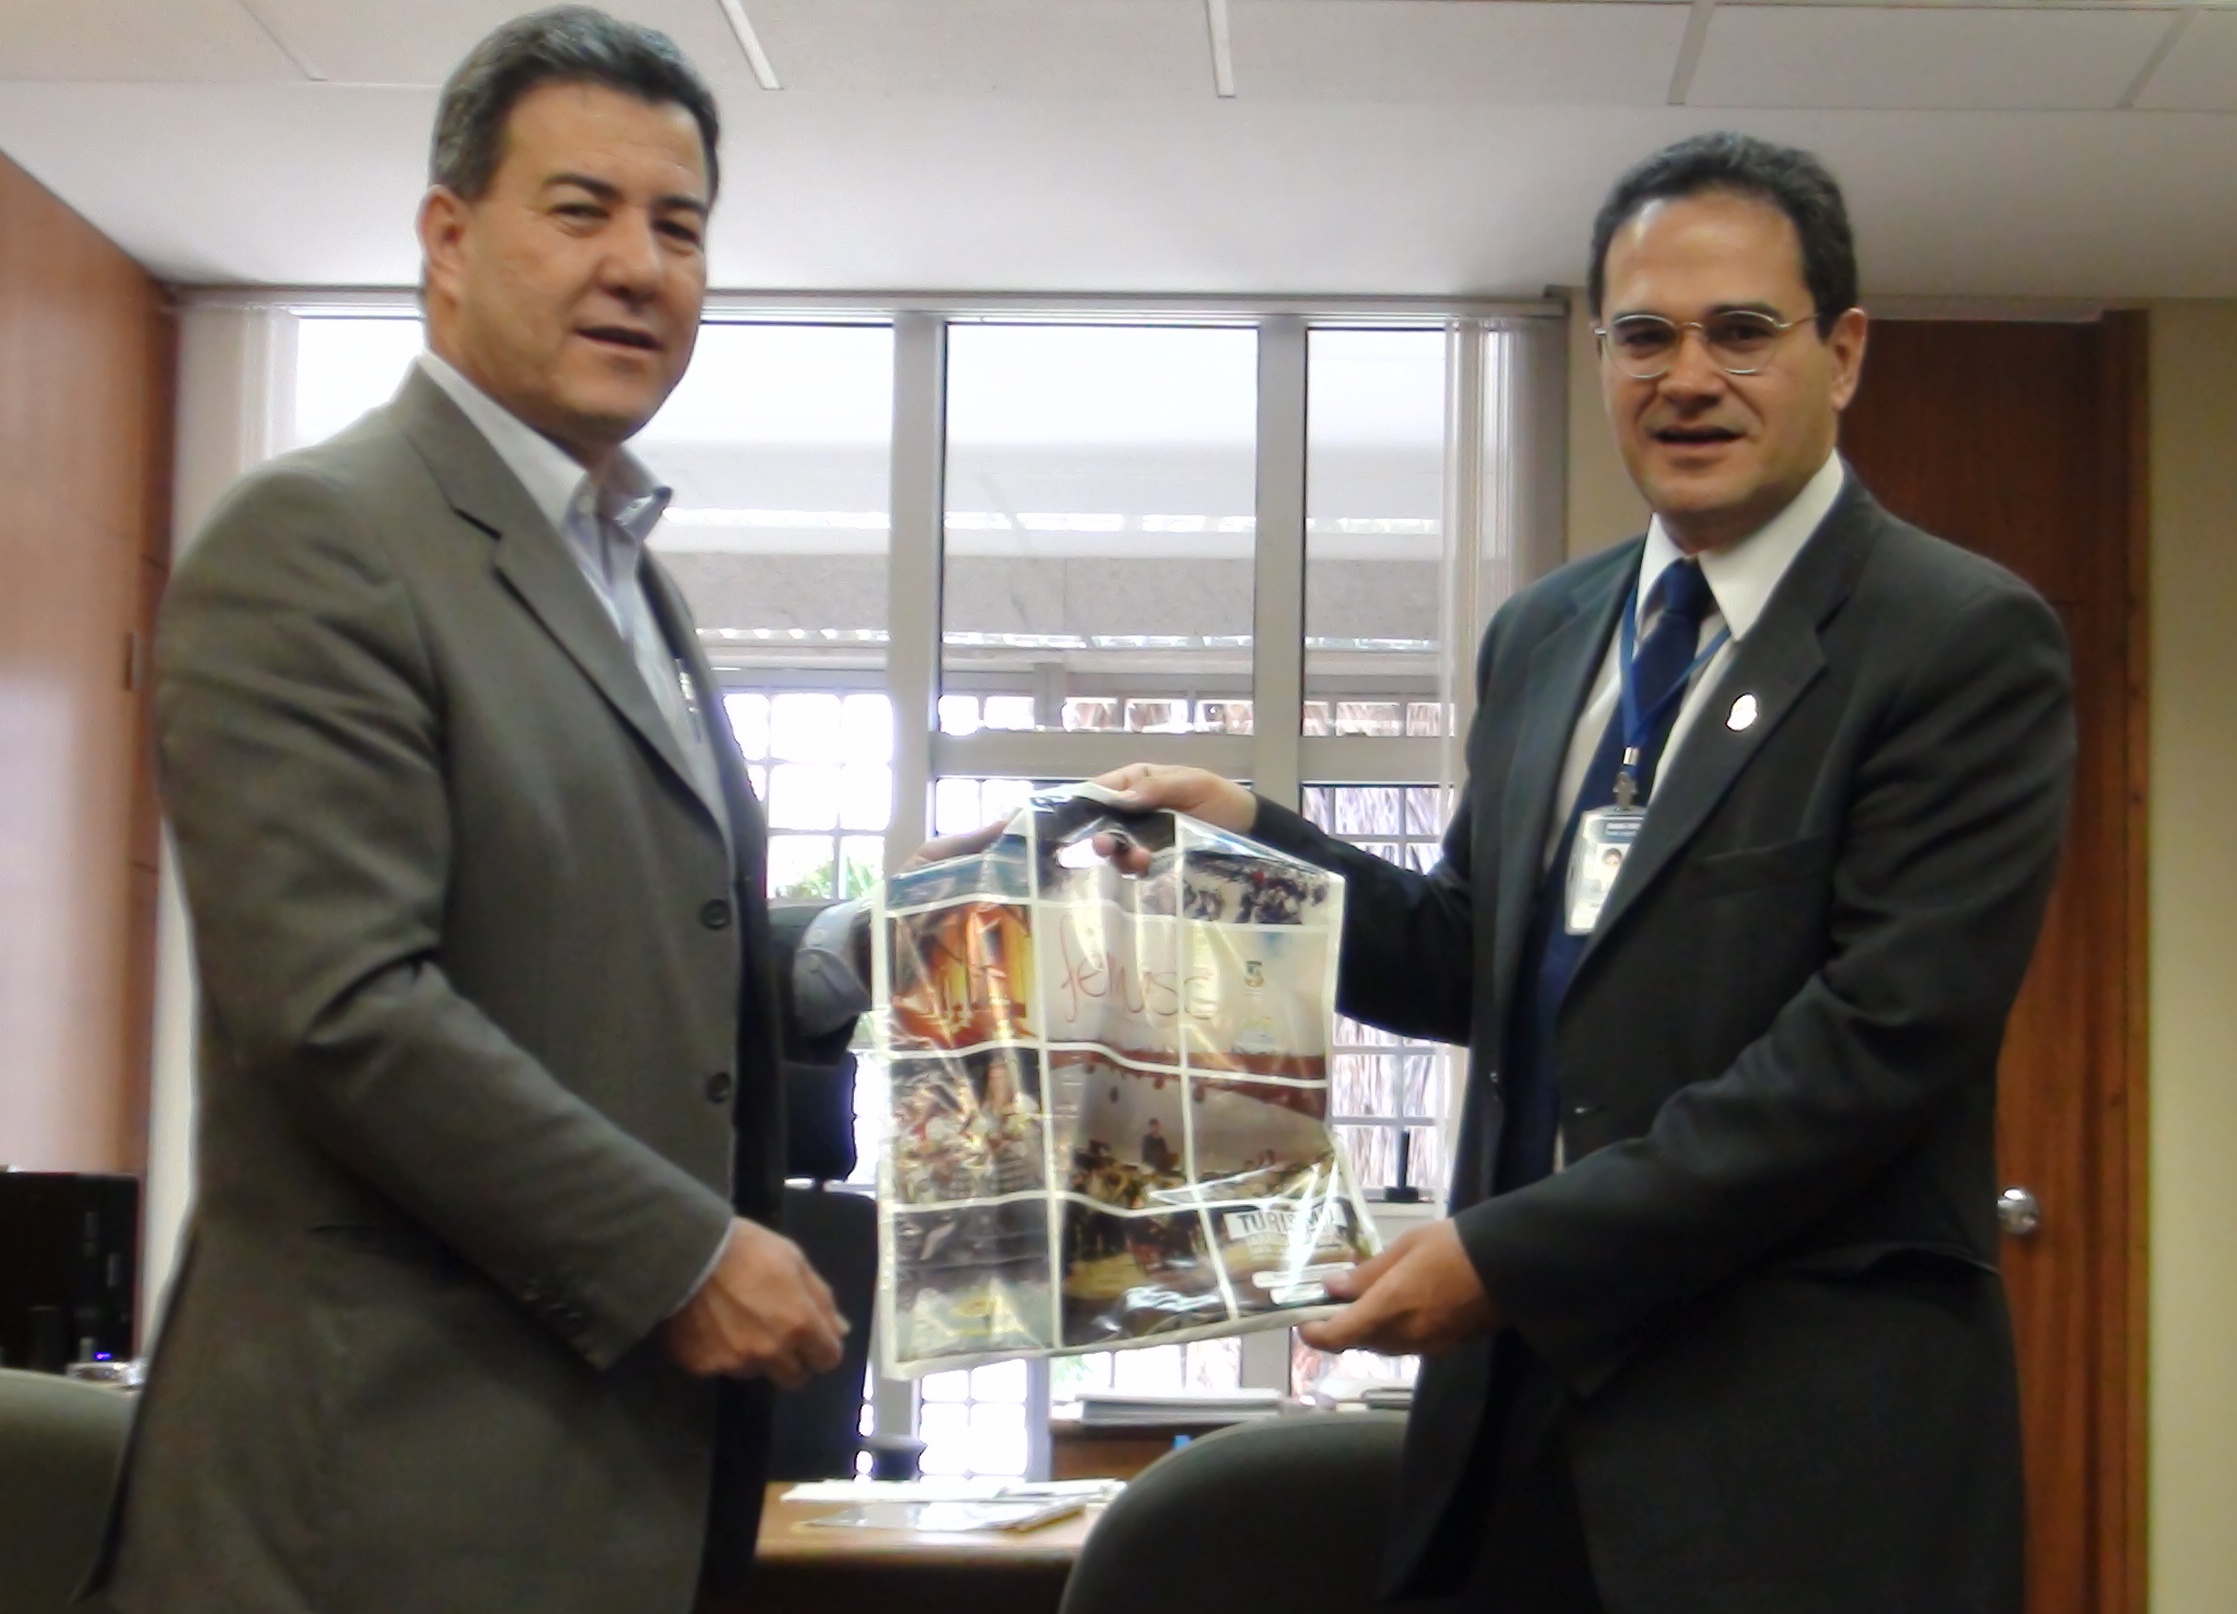 MODERNIZAÇÃO - Câmara de Jaraguá do Sul intensifica parceria com Interlegis